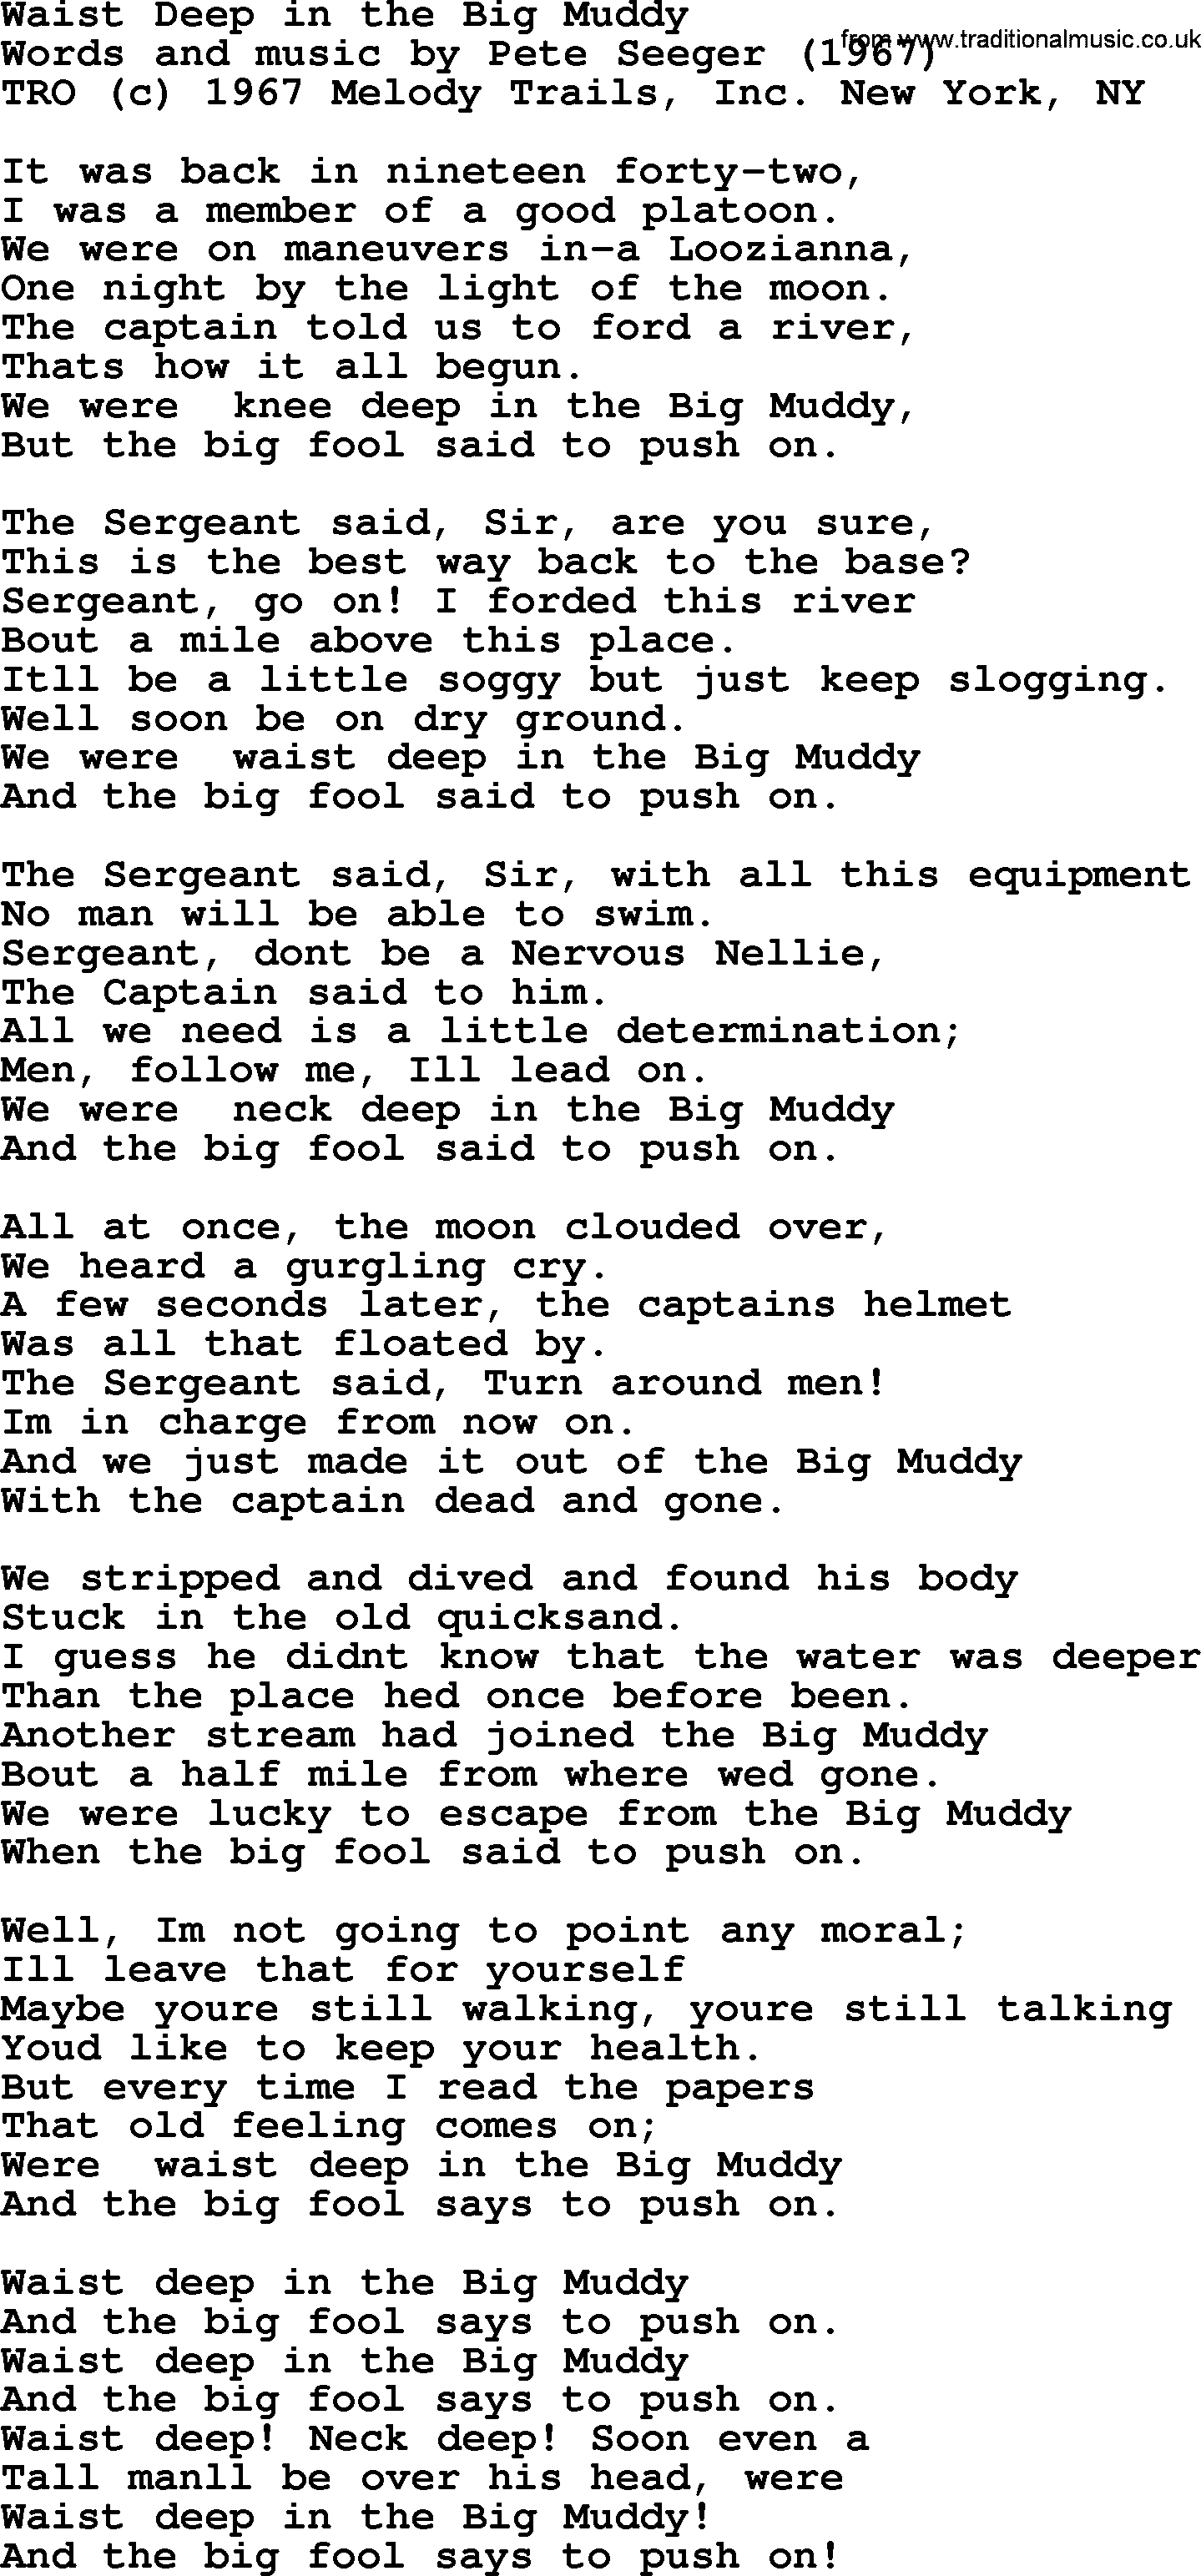 Pete Seeger song Waist Deep in the Big Muddy-Pete-Seeger.txt lyrics